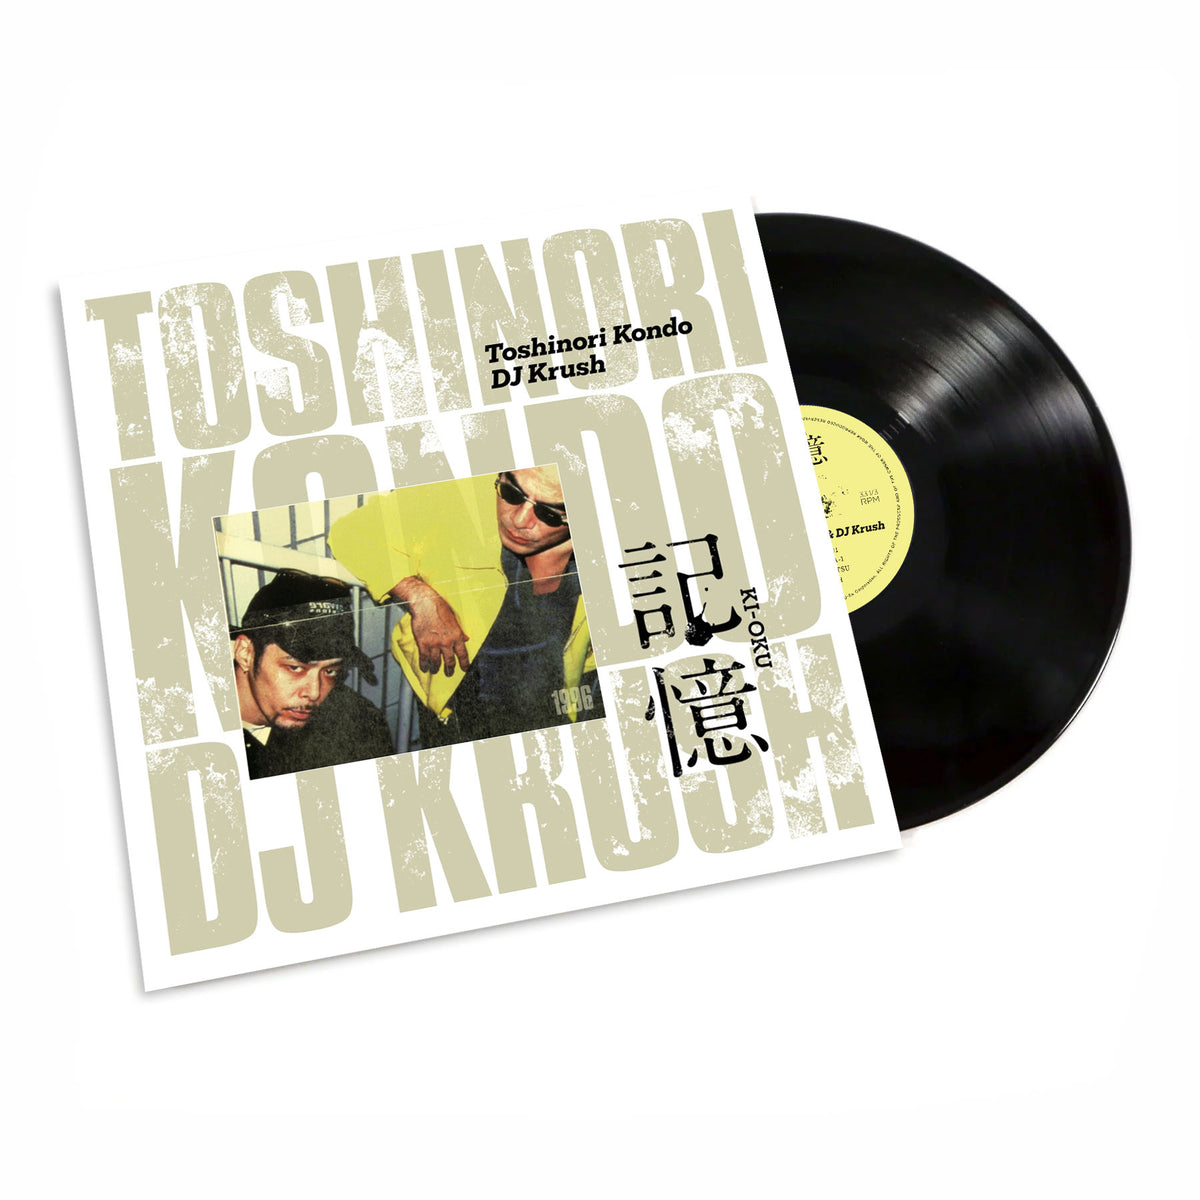 DJ Krush & Toshinori Kondo: Ki-Oku Memorial Release Vinyl 2LP 